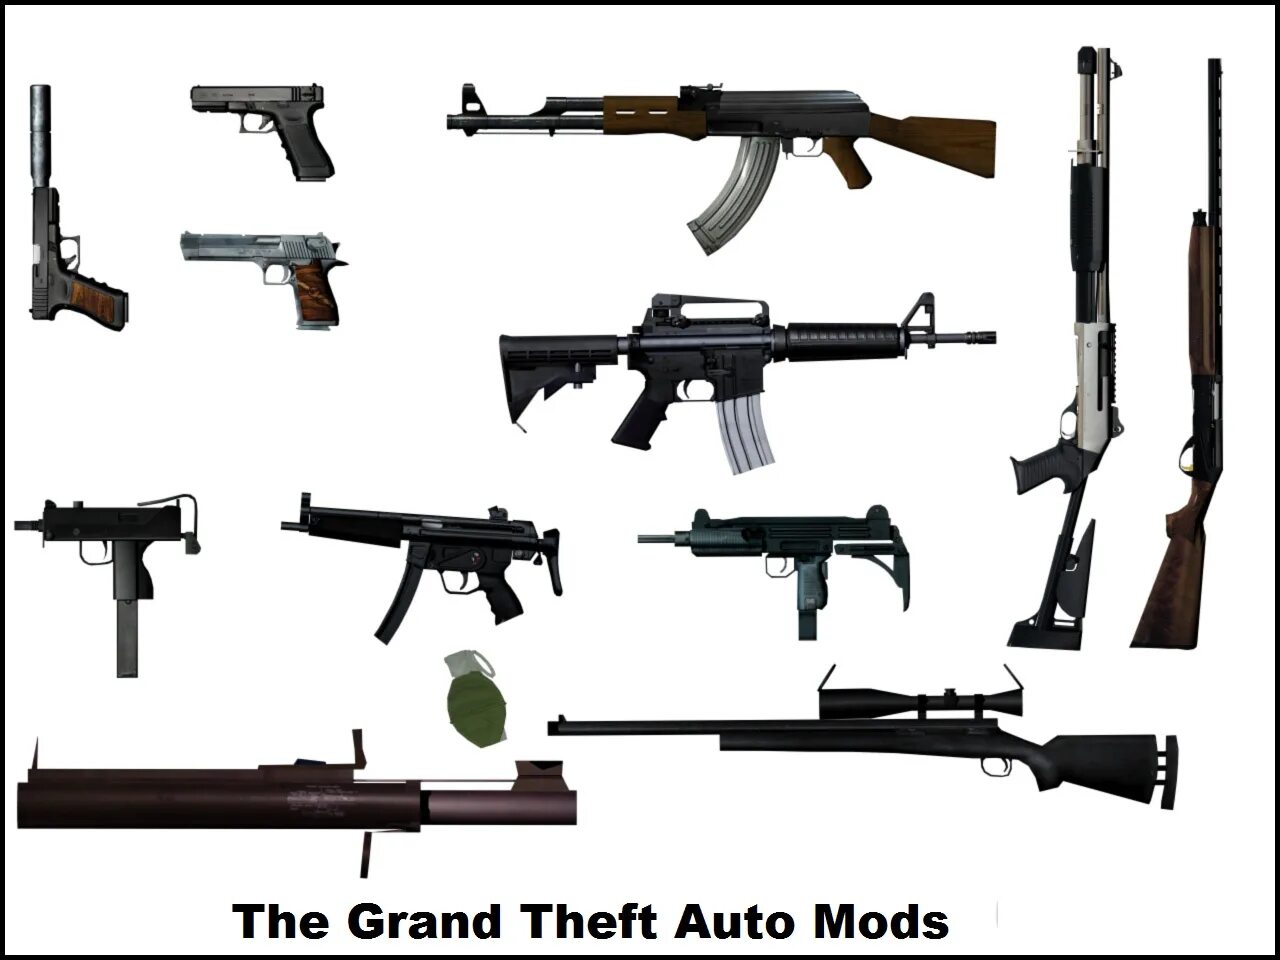 Игра гта 5 оружия. Оружие из ГТА 5. GTA San Andreas оружие 1 оружие. GTA sa Andreas оружие Pack. GTA San Weapons пак.